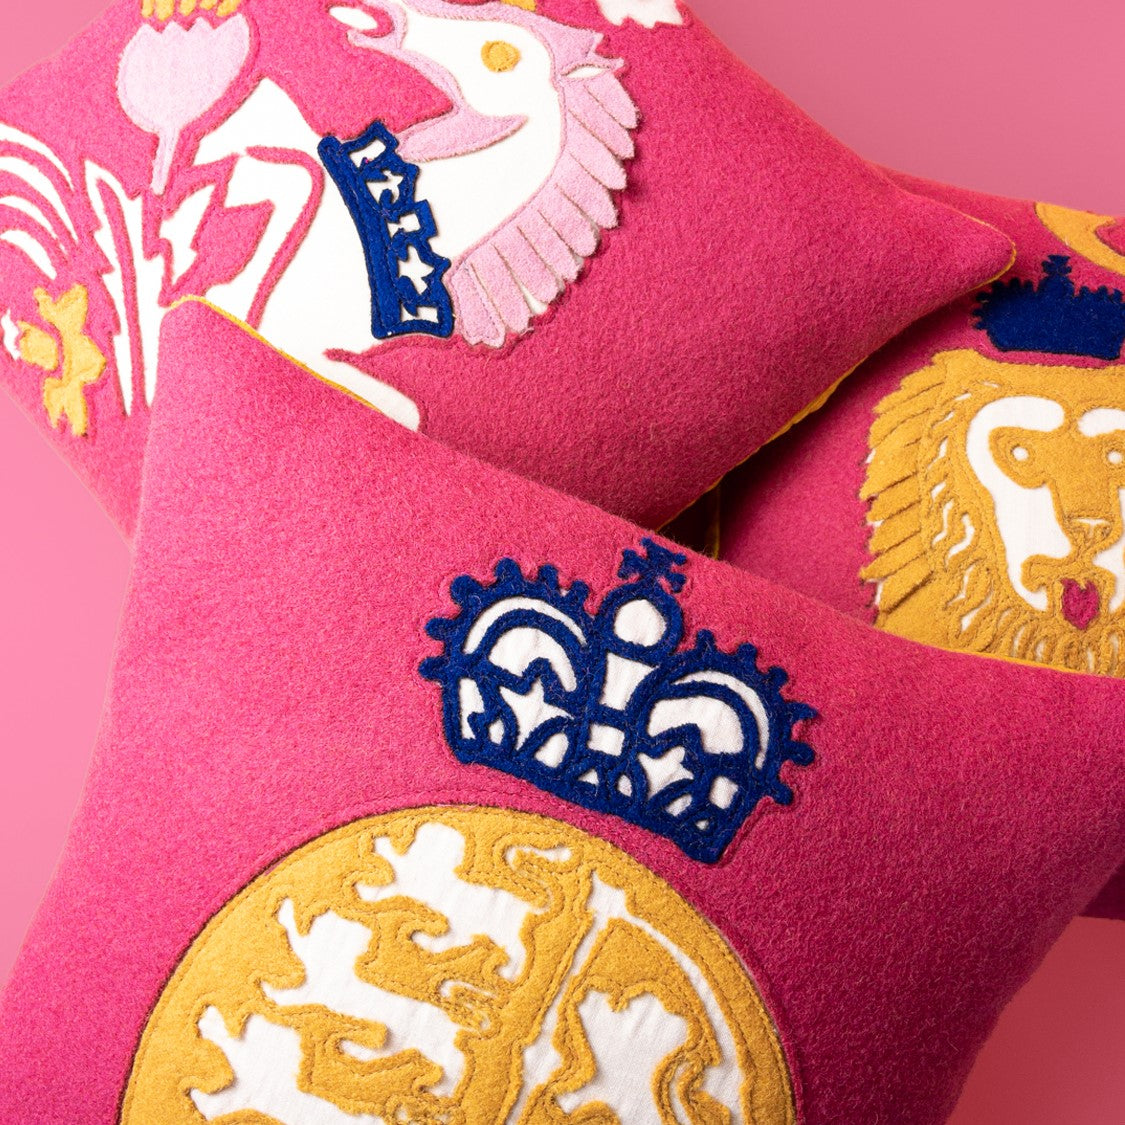 Coronation Cushion - Royal Coat of Arms -Pink